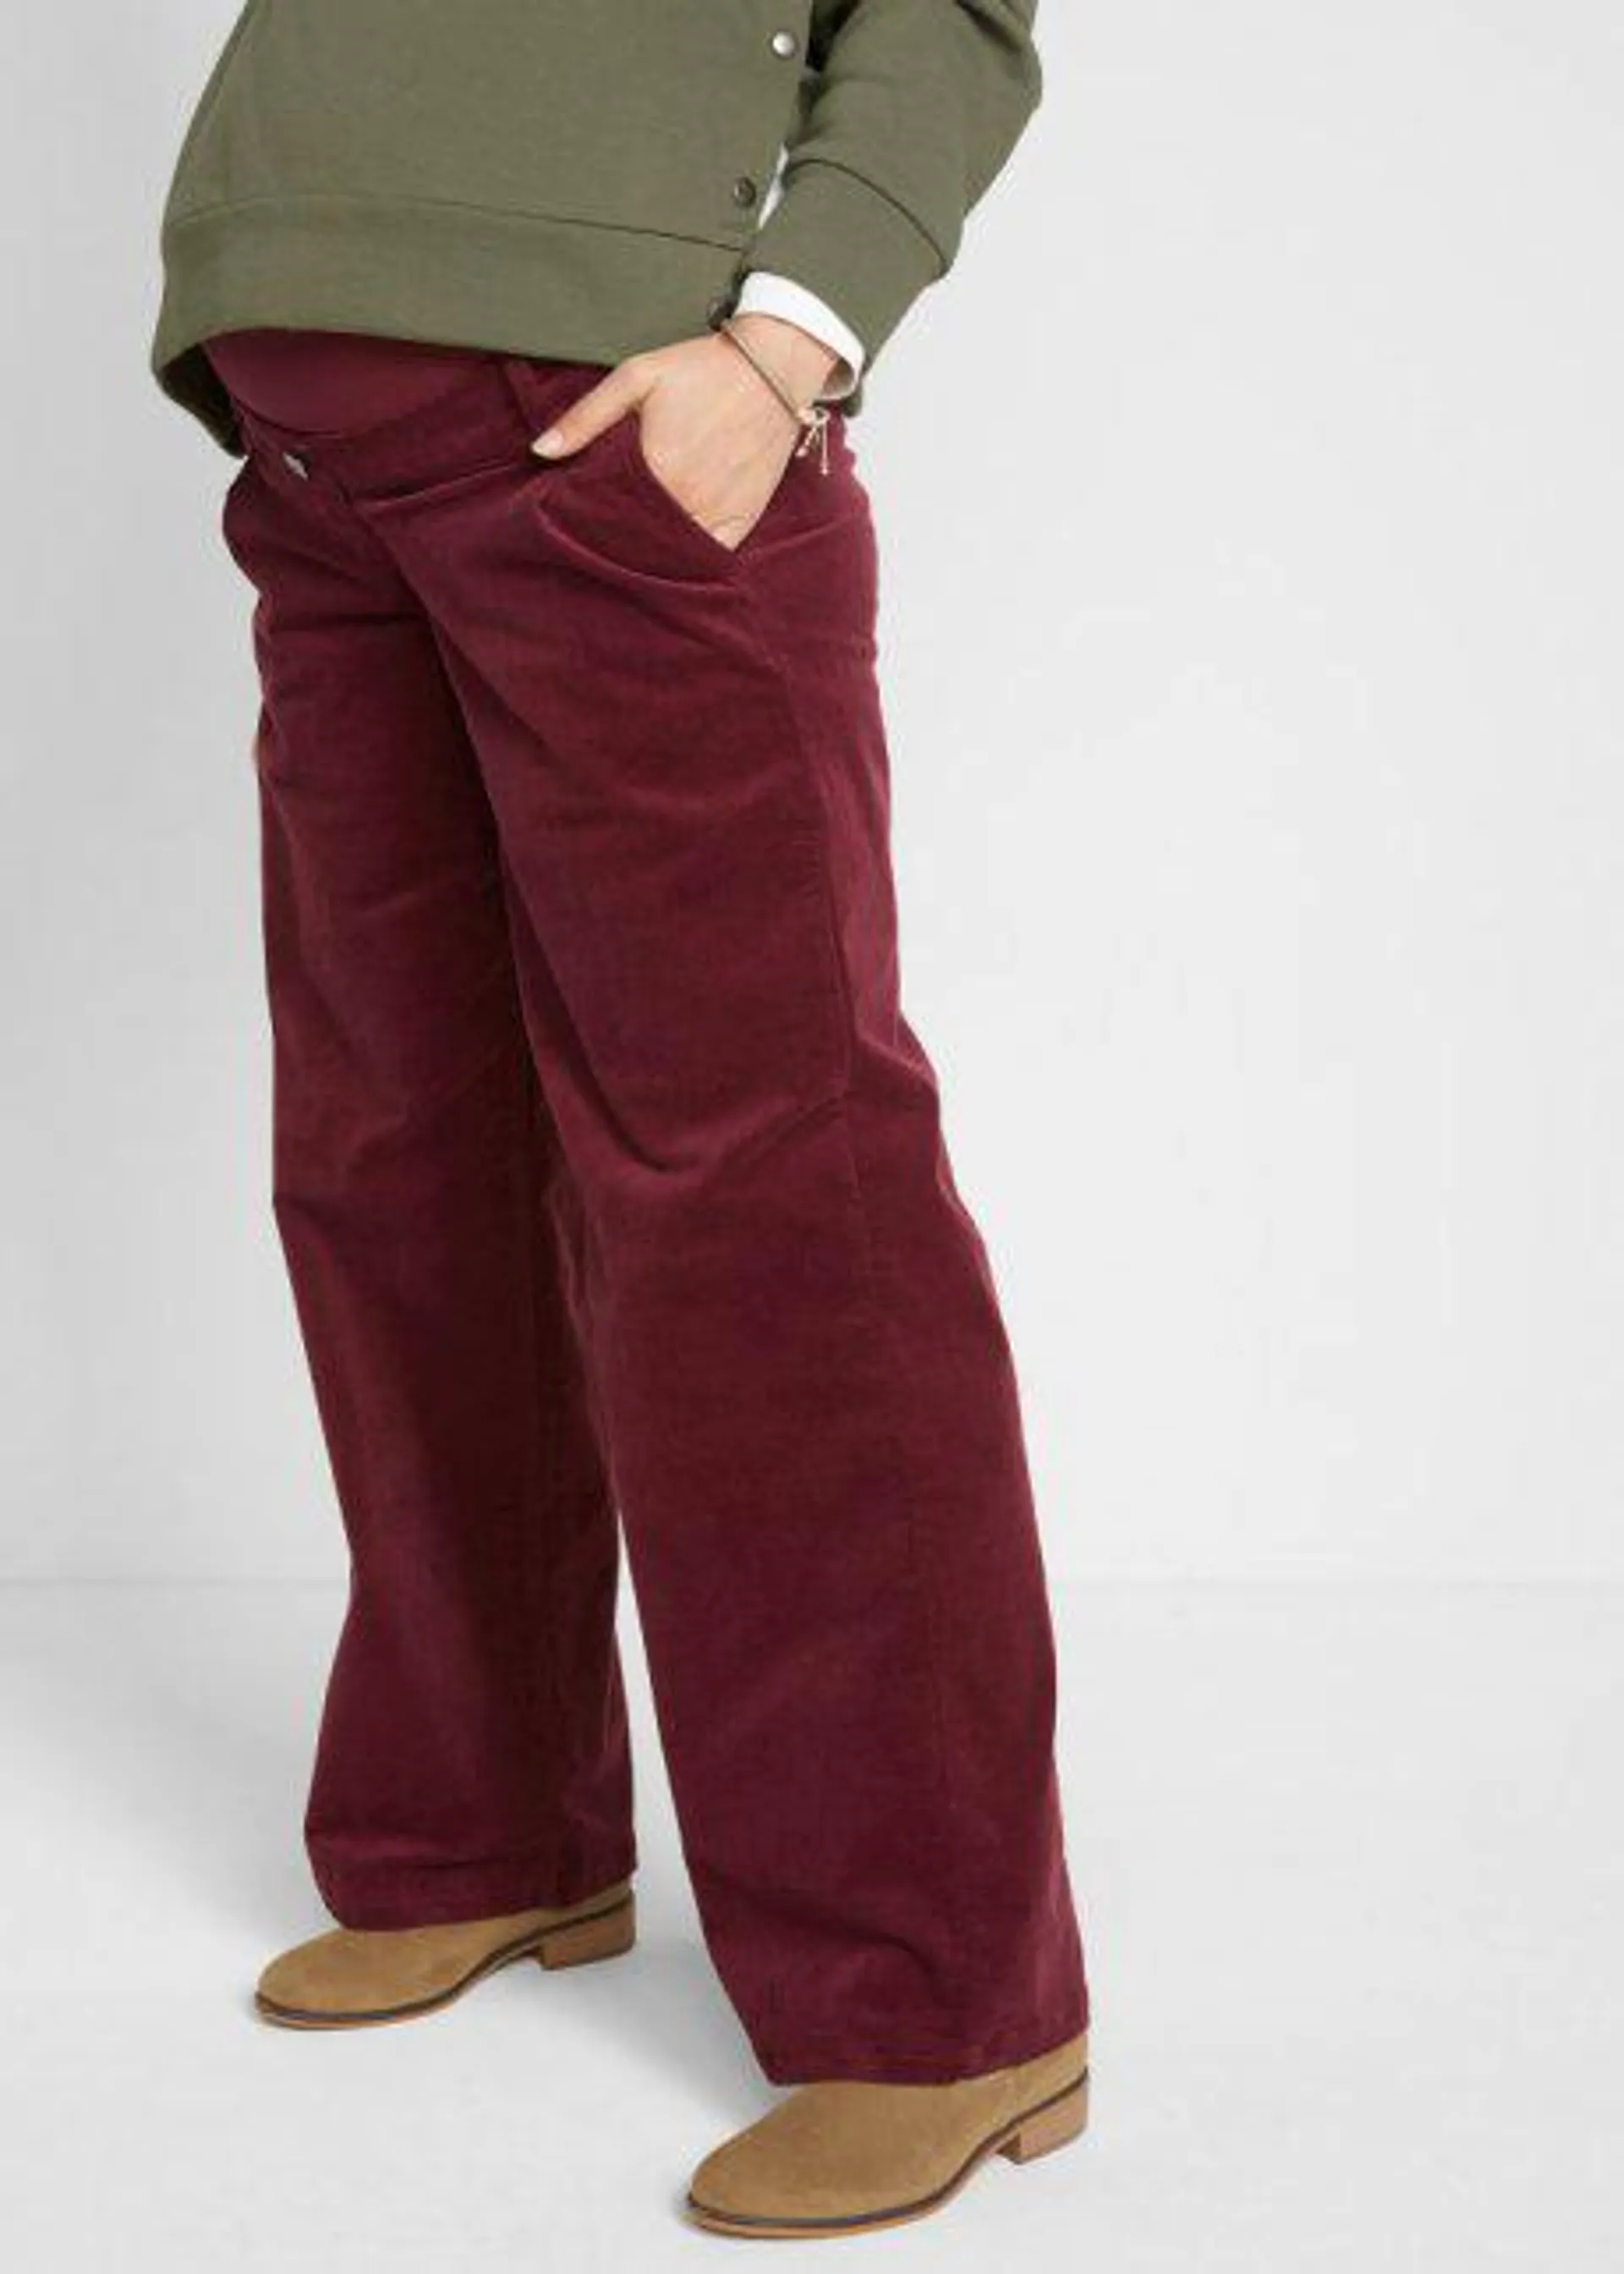 Pantaloni culotte prémaman in velluto elasticizzato